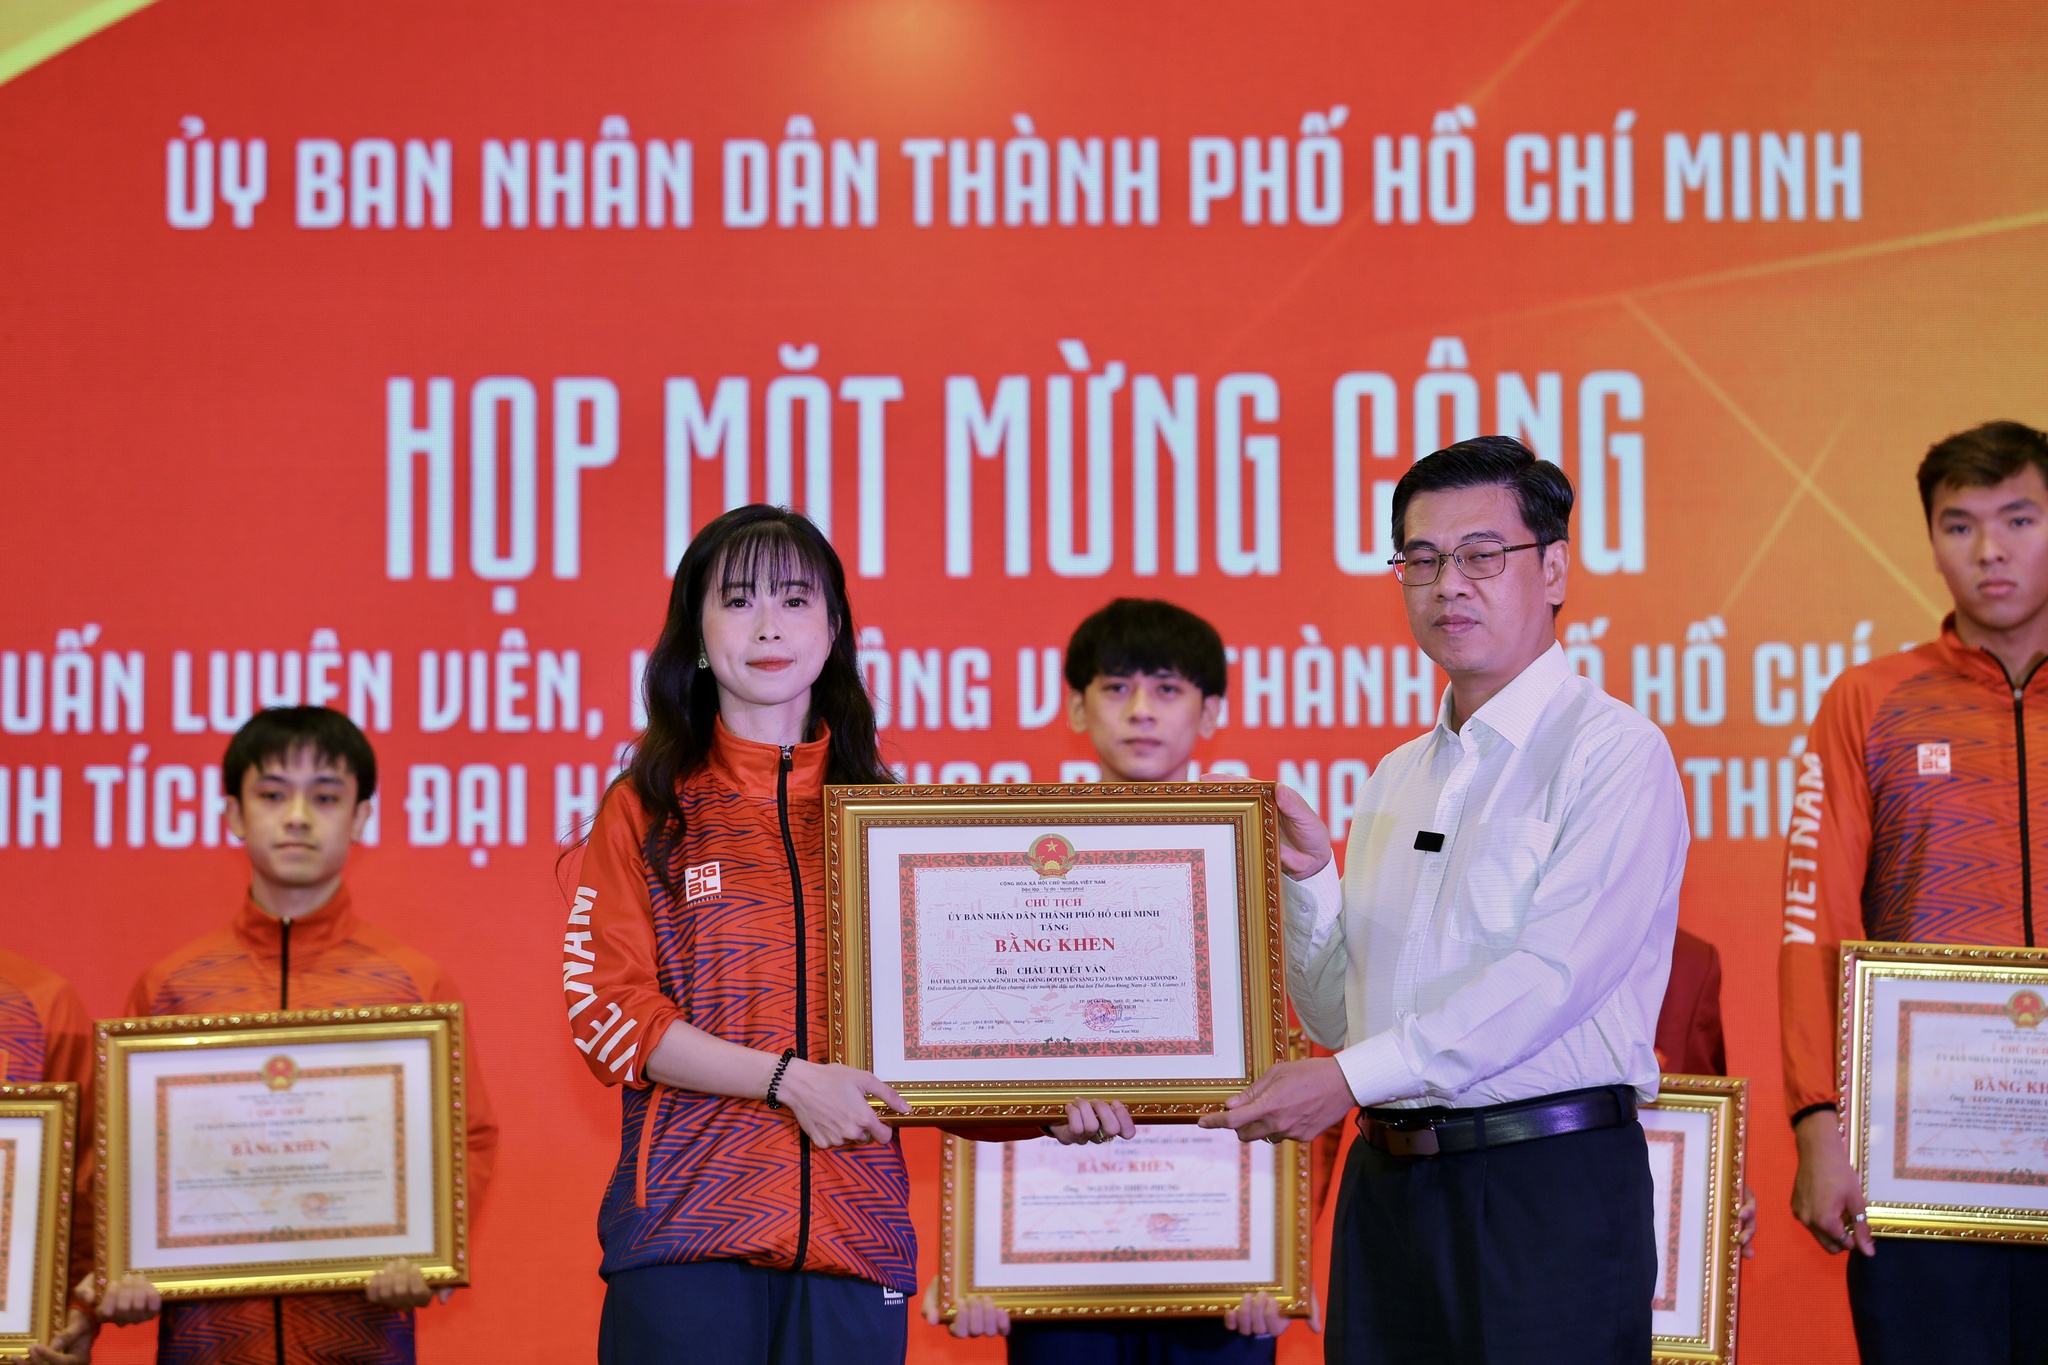 208 HLV, VĐV TP.HCM được khen thưởng thành tích SEA Games 31 hơn 17 tỉ đồng - ảnh 6